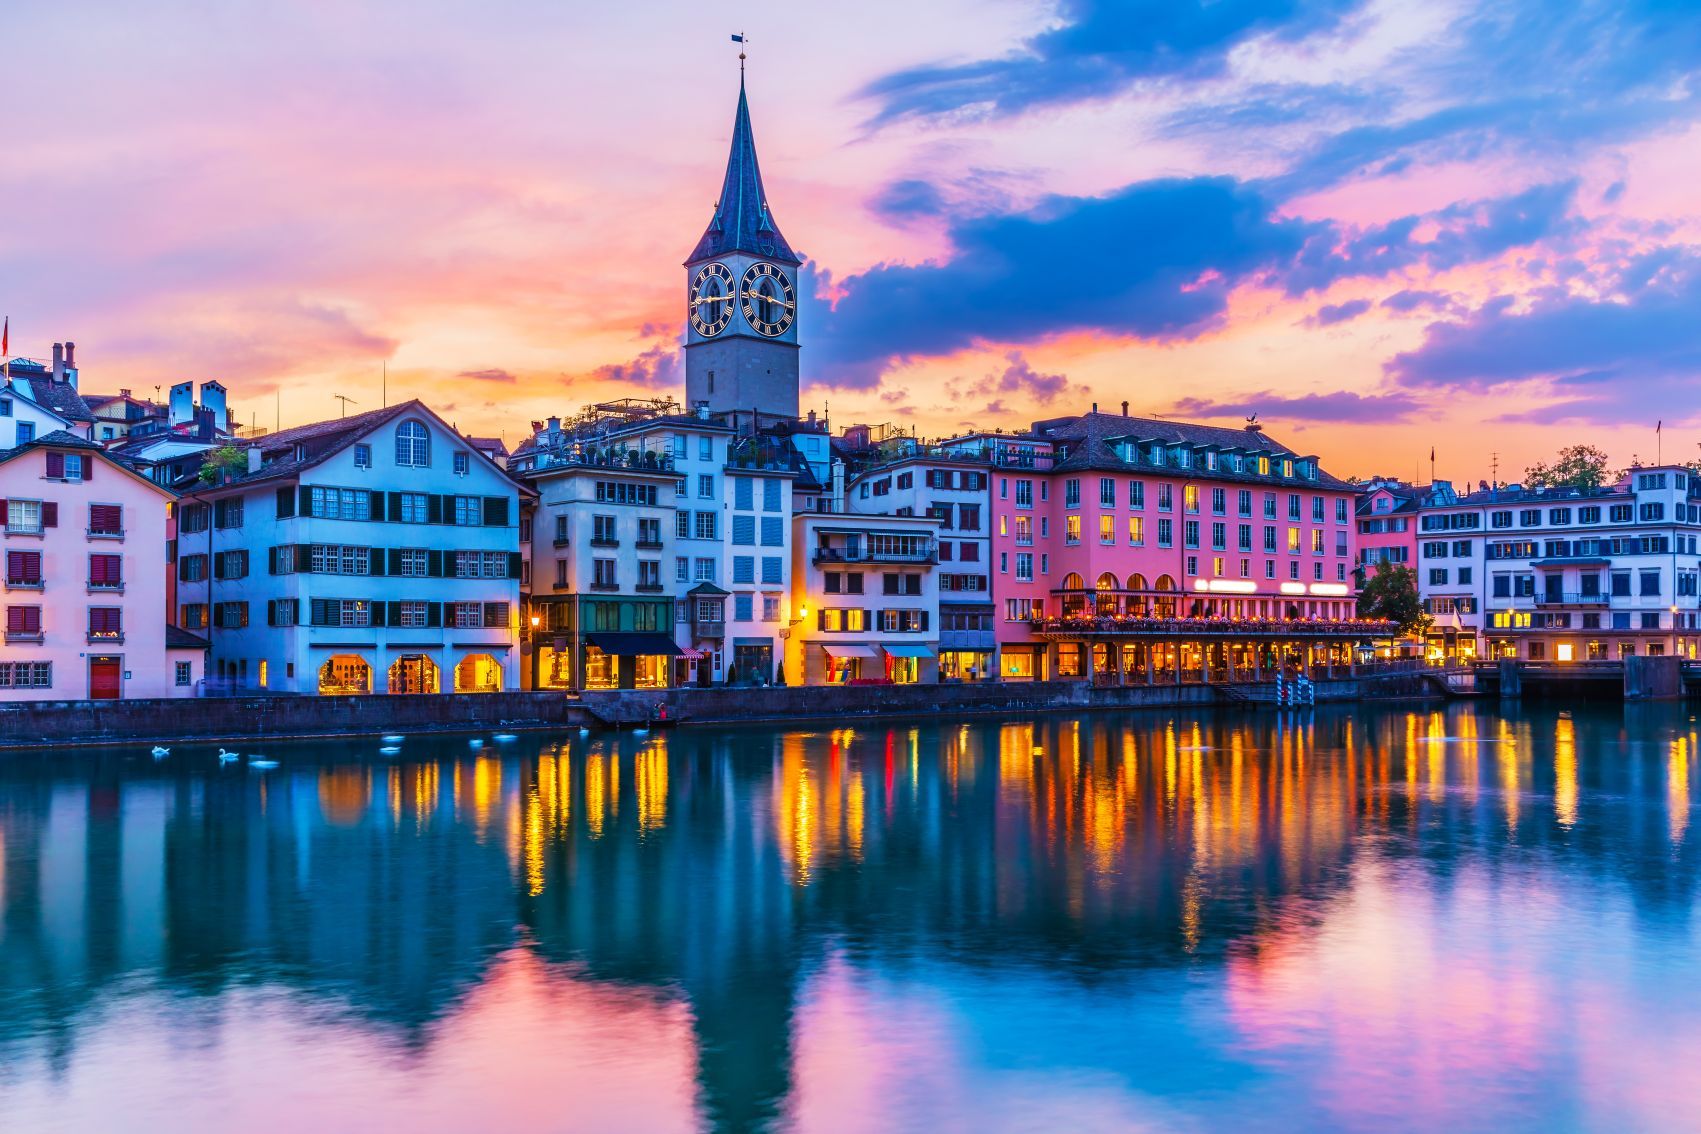 Zurich: The Best Experiences